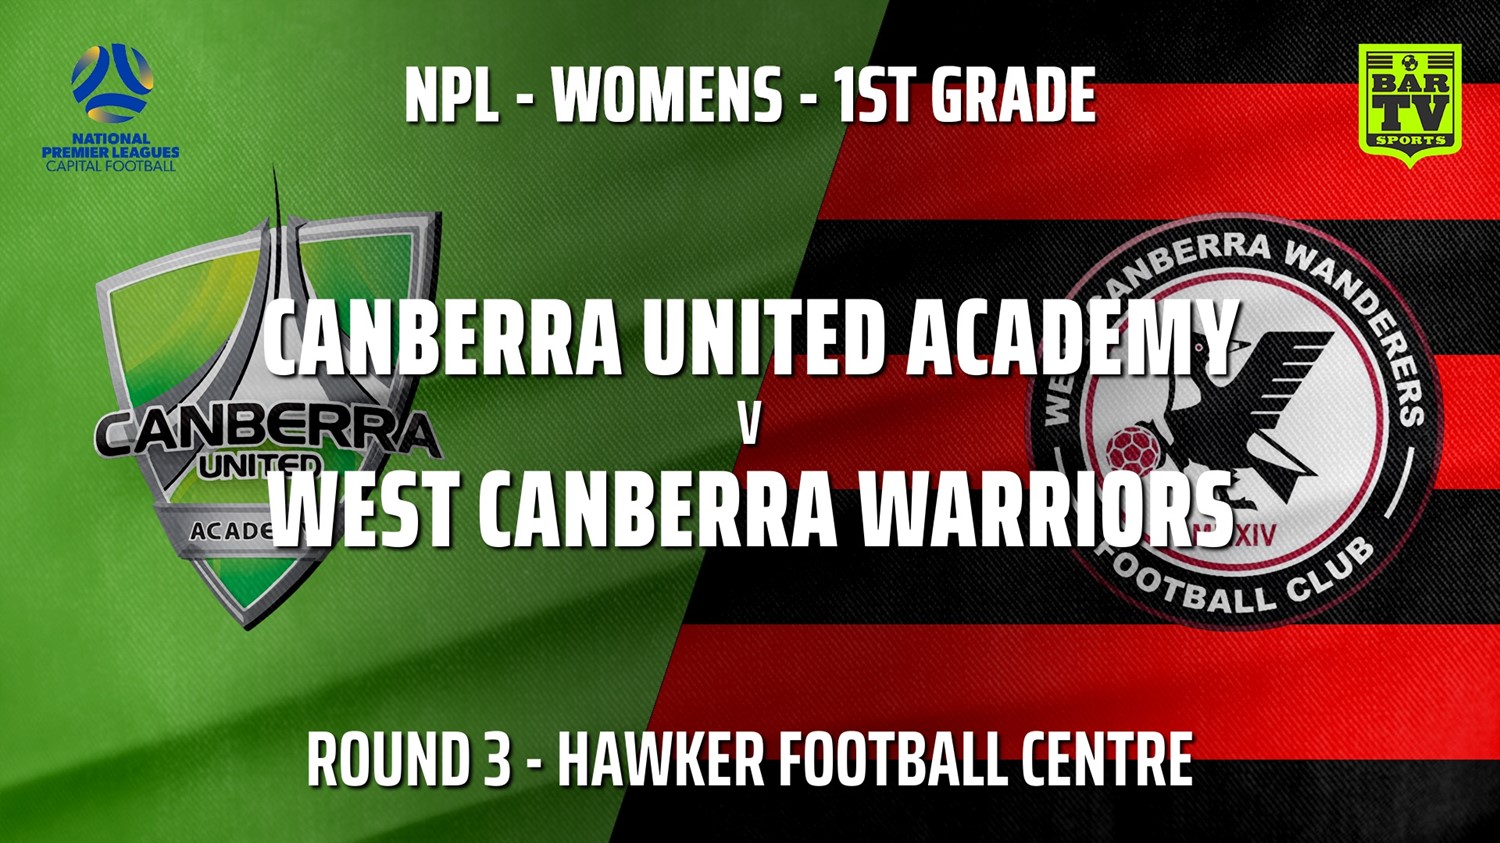 210422-NPLW - Capital Round 3 - Canberra United Academy v West Canberra Warriors (women) Minigame Slate Image